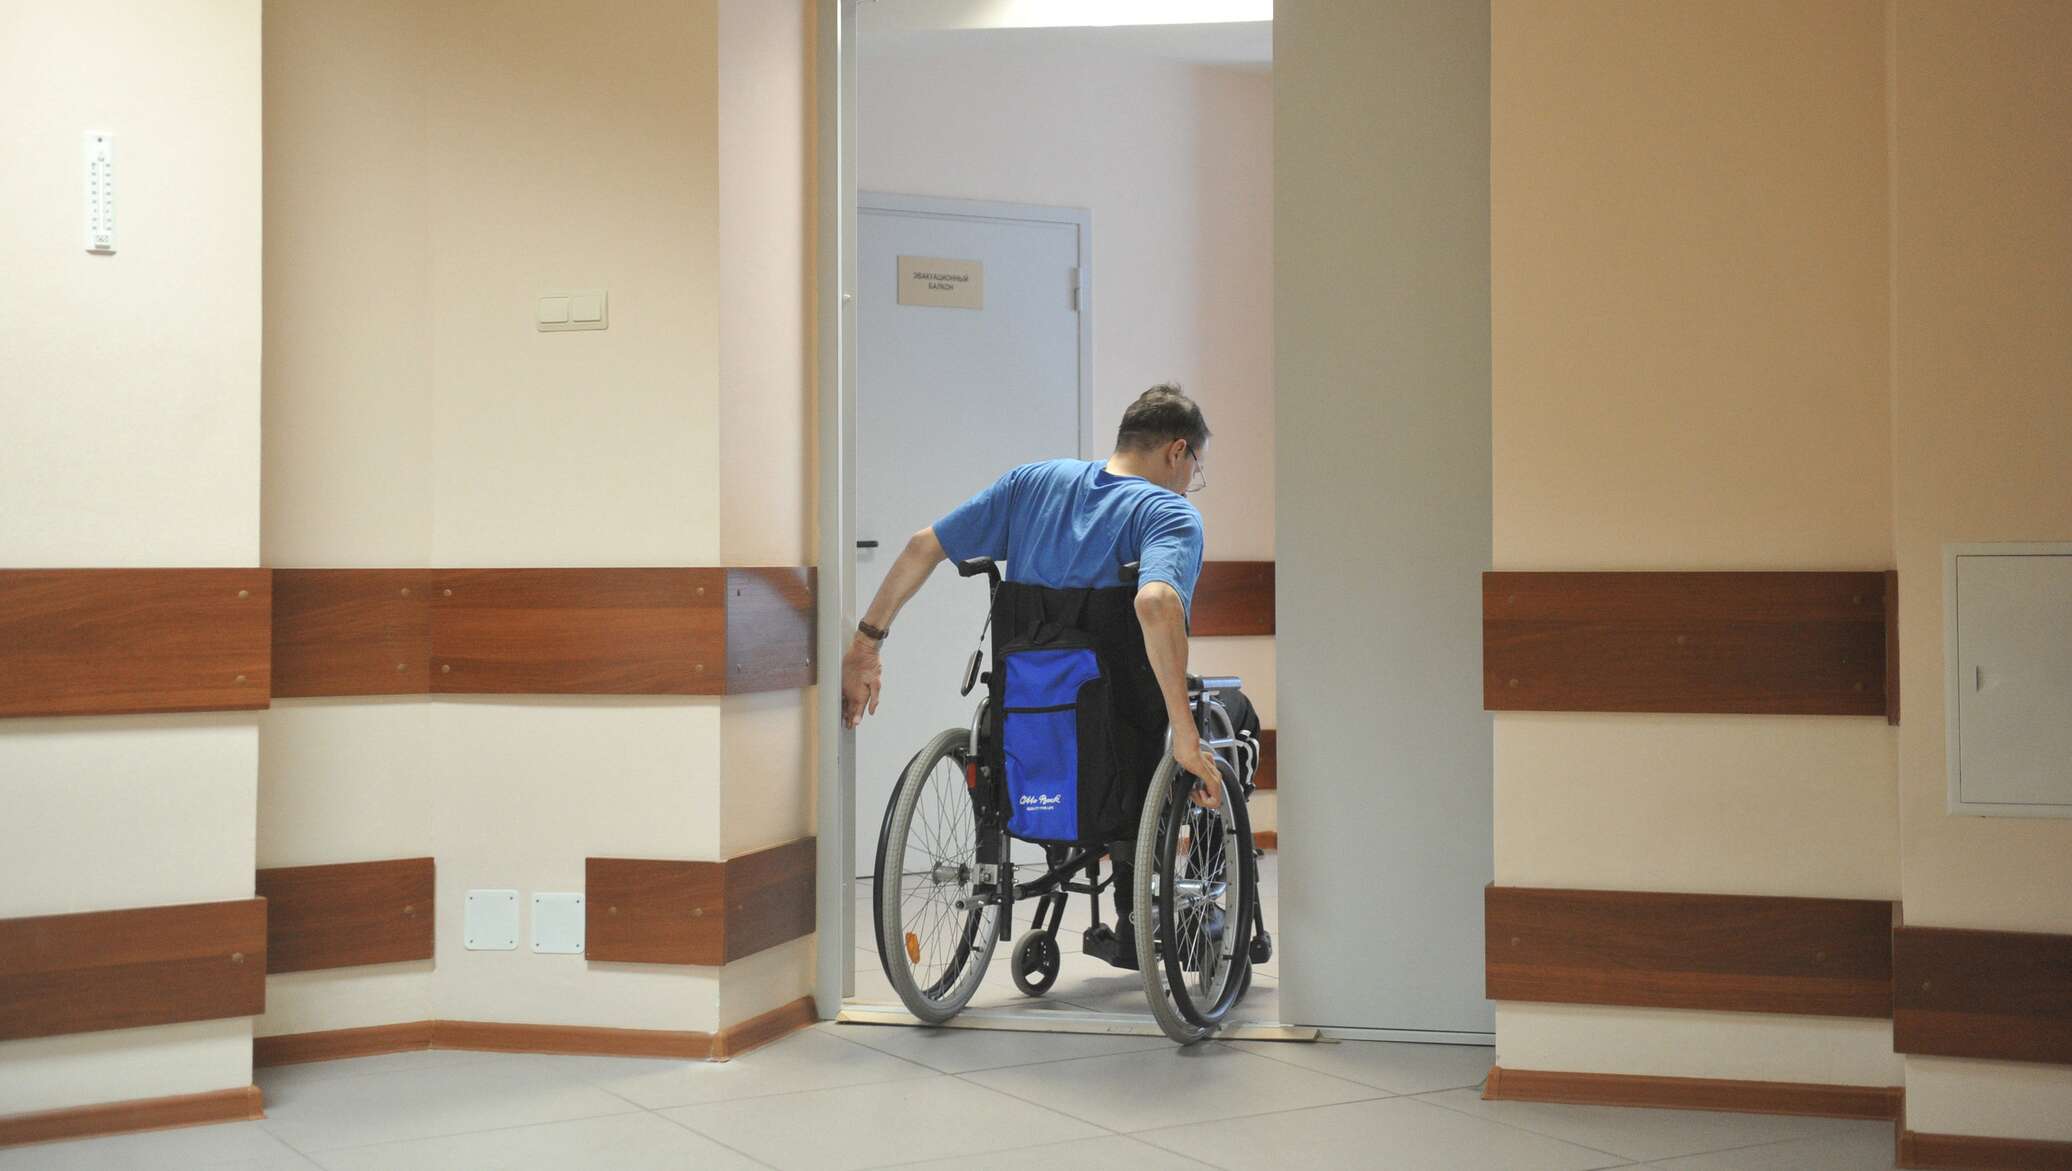 Покупка жилья инвалидам. Двери для инвалидов колясочников. Квартира для инвалида. Жильё для инвалидов колясочников. Проем для инвалидов.